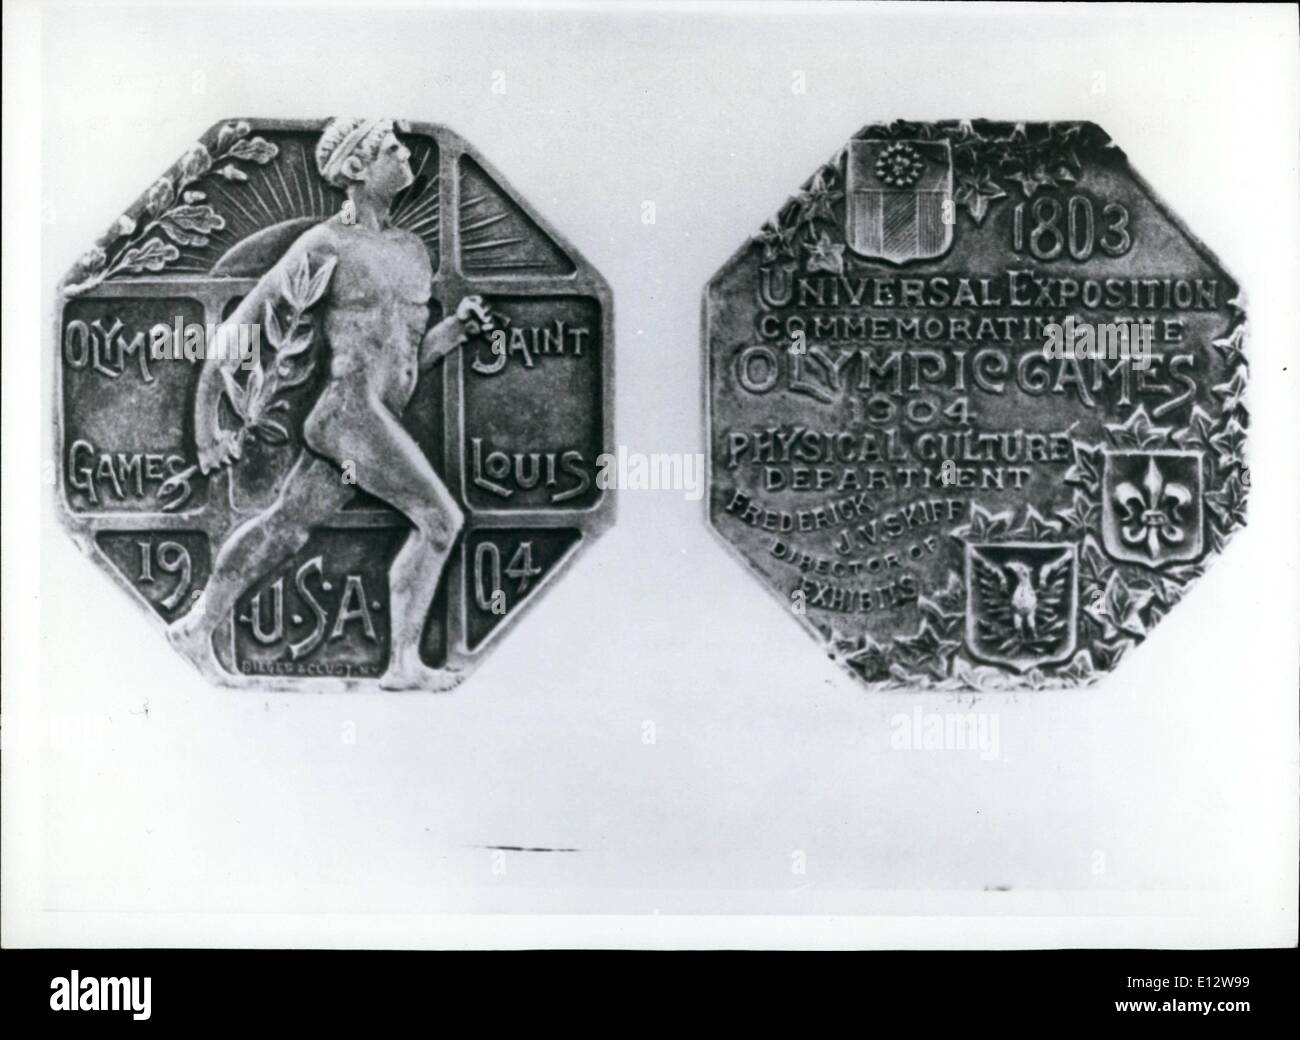 25 février 2012 - La toute première médaille pour le Canada a gagné par le Montréalais Étienne Desmarteau au lancer du marteau, aux Jeux olympiques de Saint-Louis, USA, en 1940. Keystone Montréal, Canada. Banque D'Images